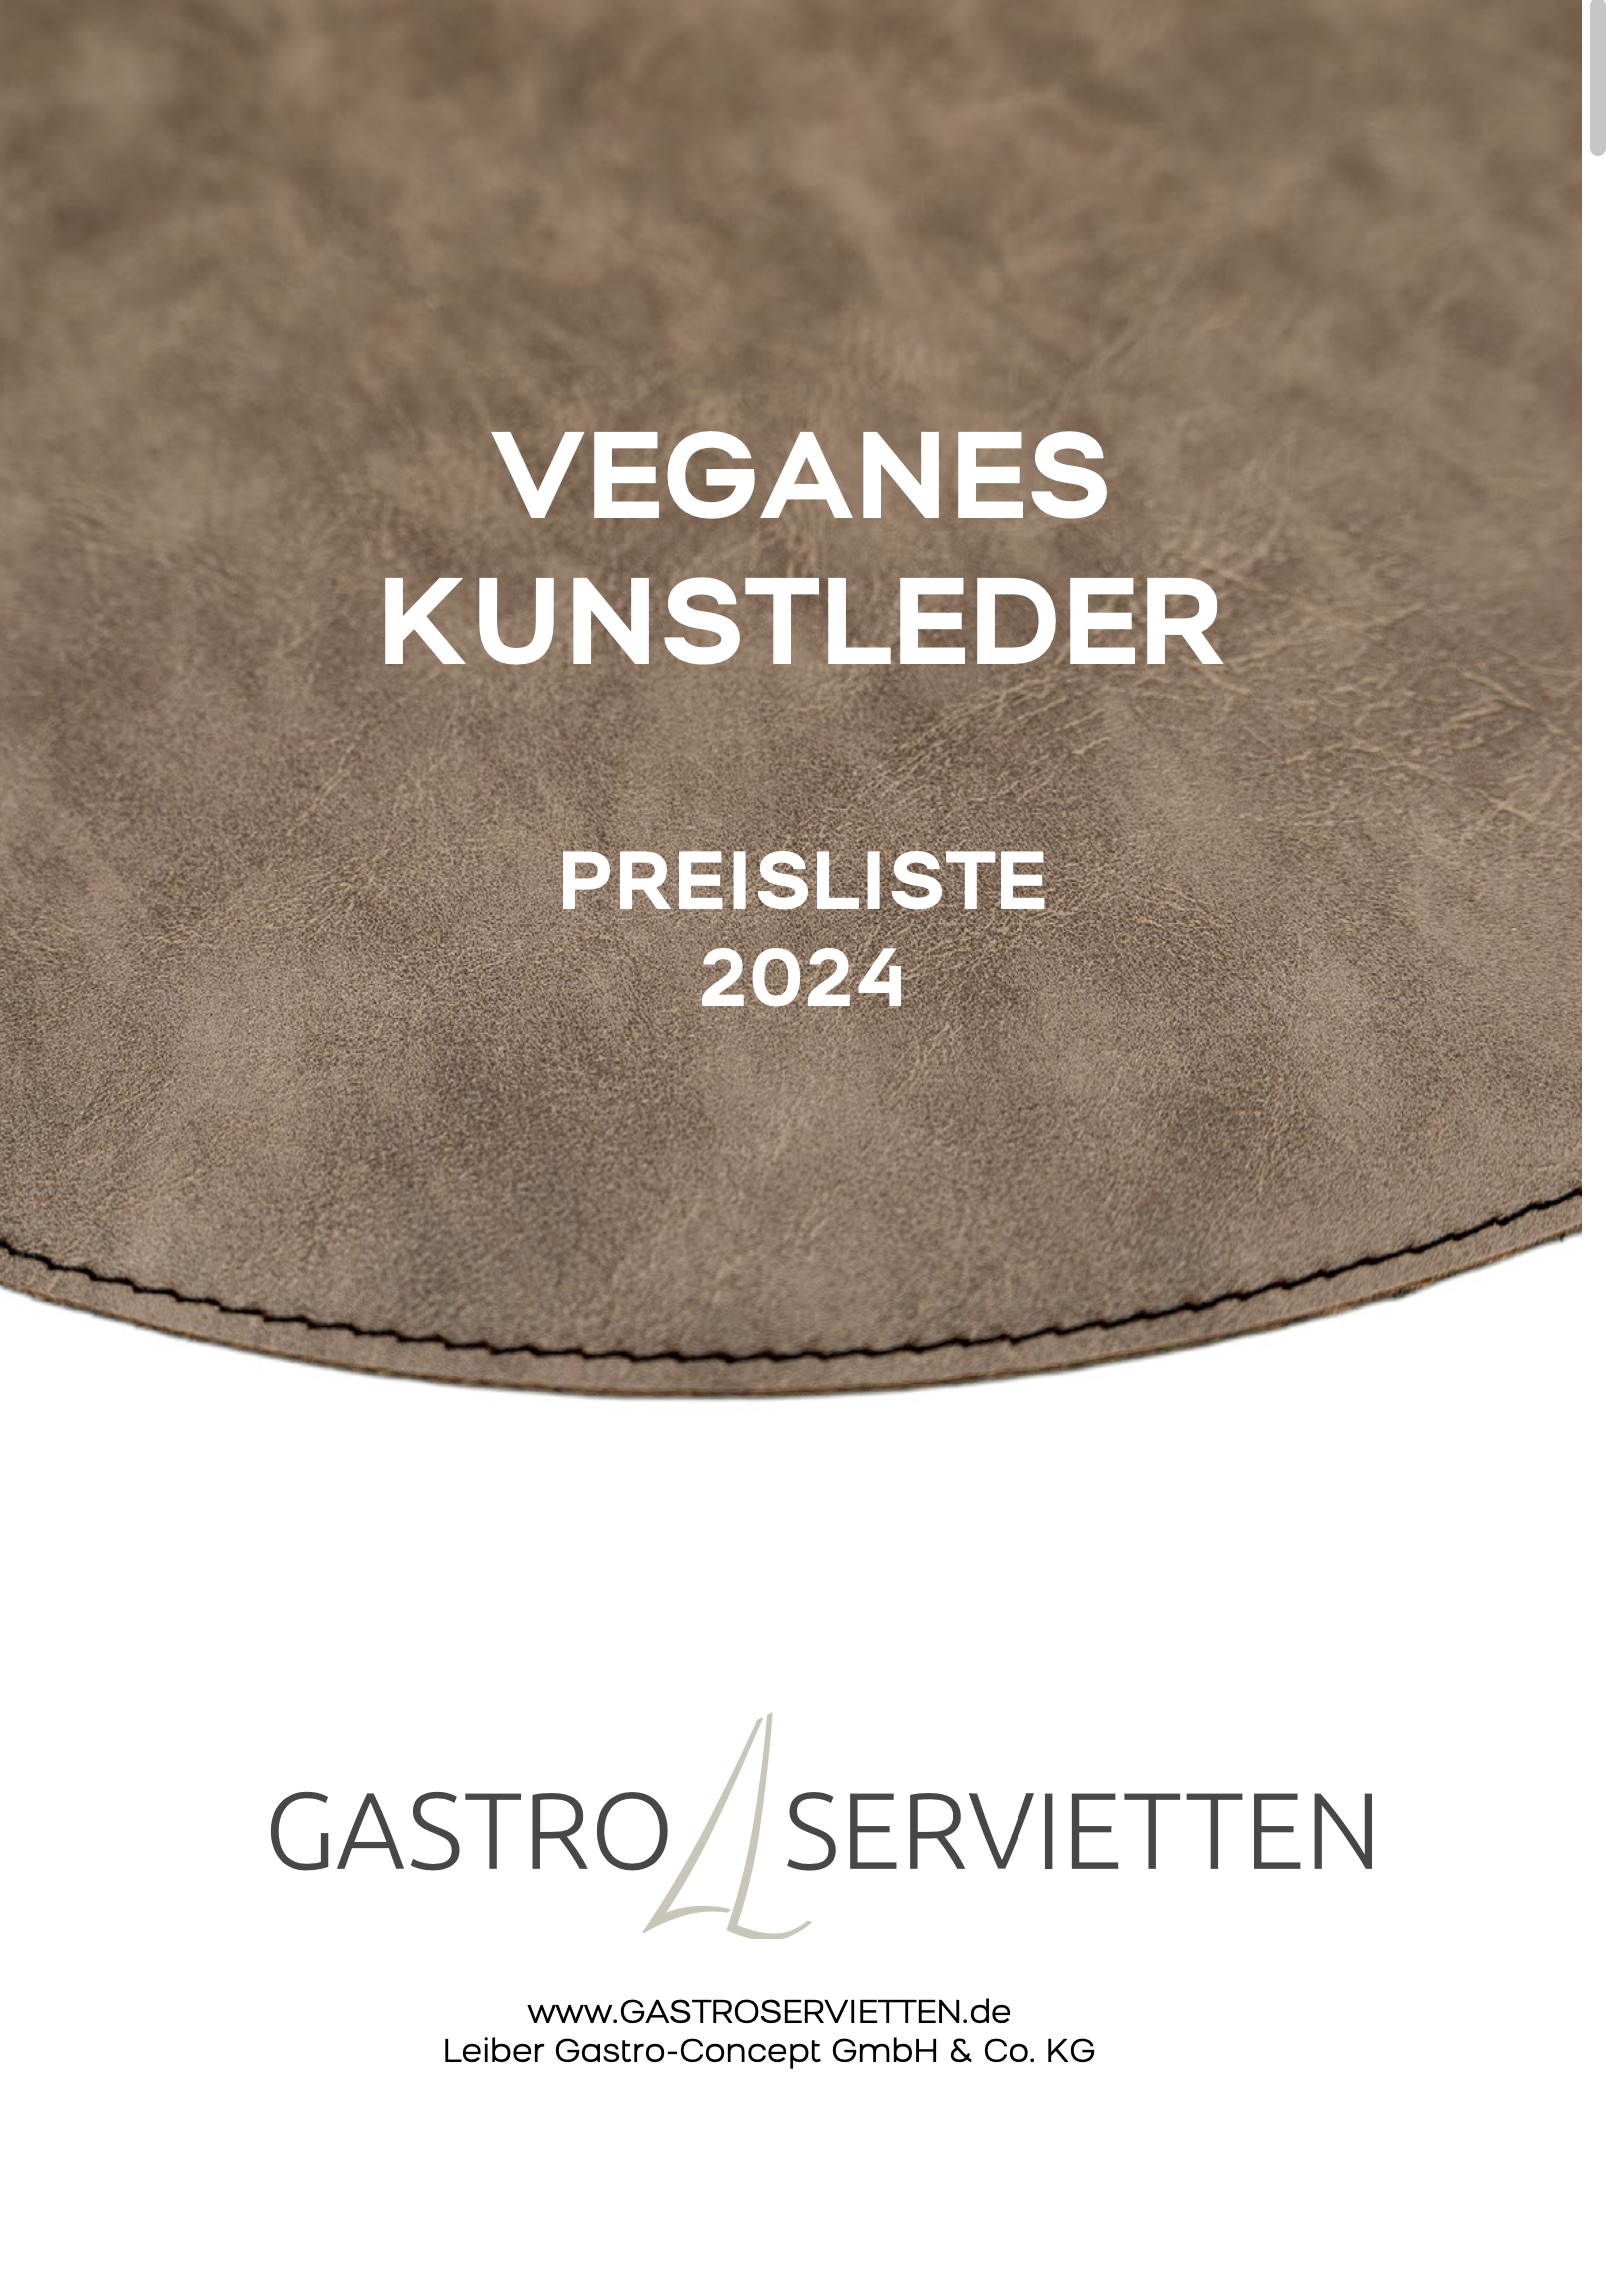 WOSDE veganes Kunstleder made in Italy Preisliste PDF